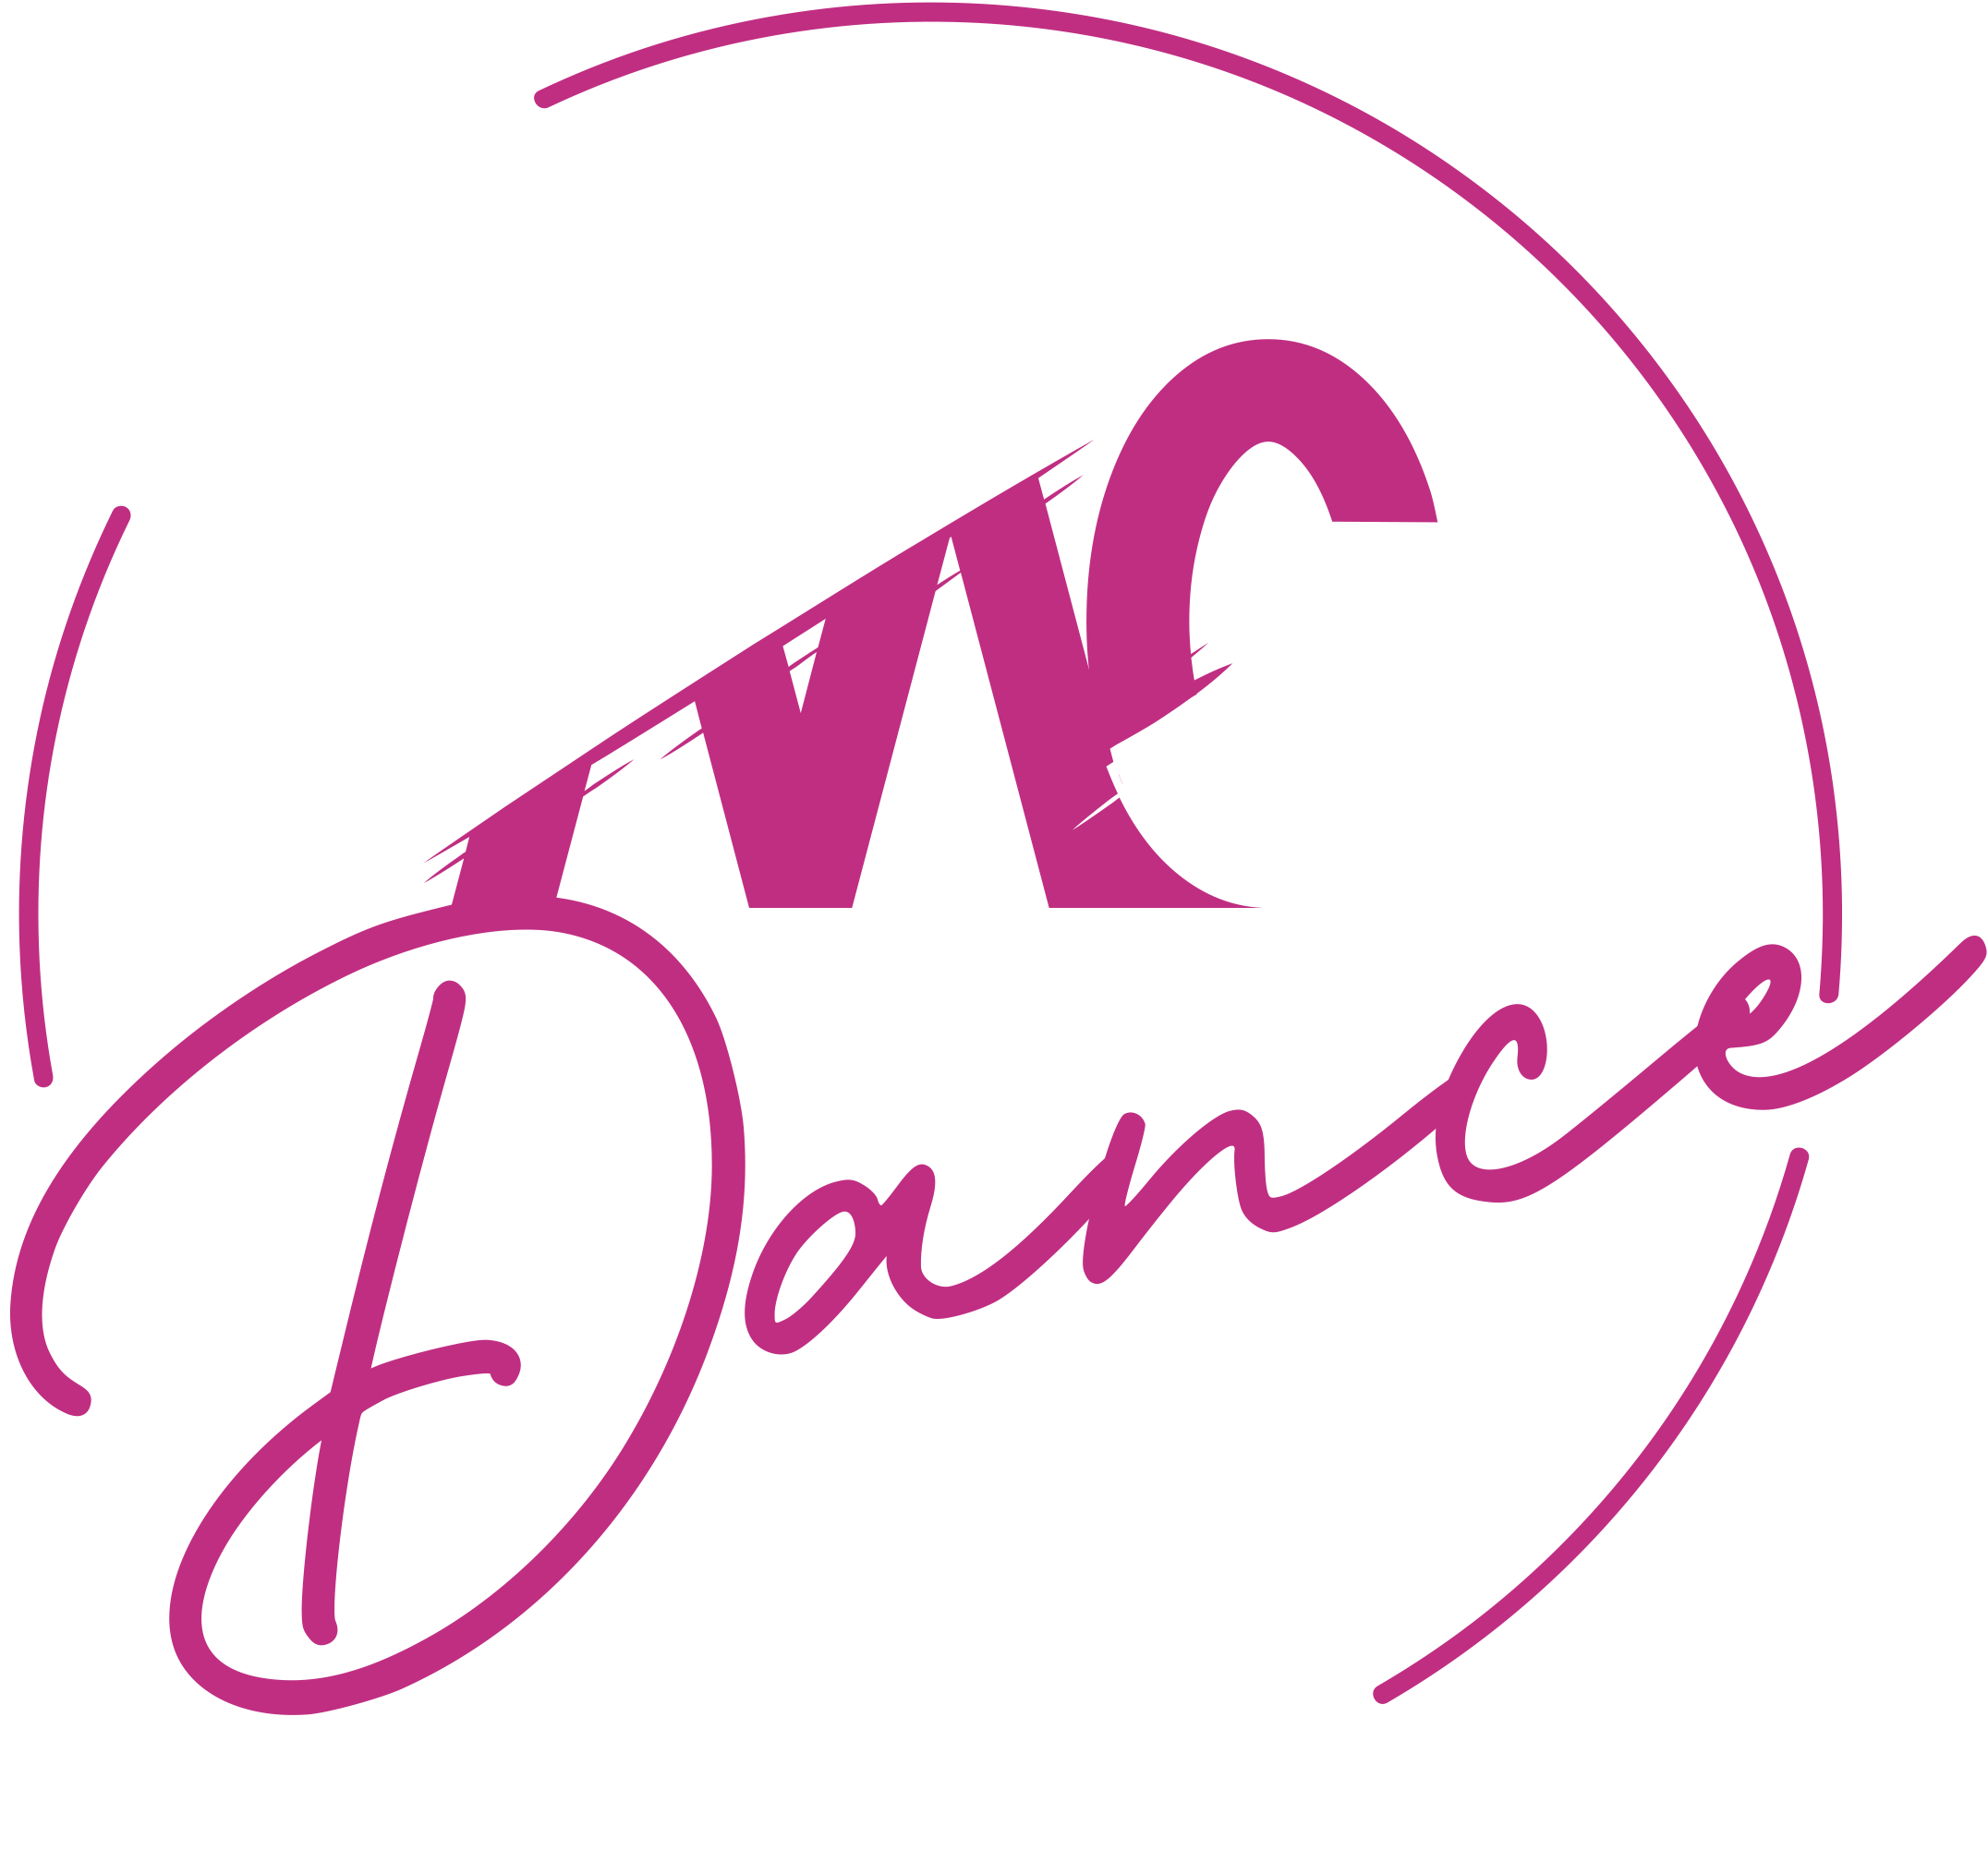 MC Dance – Academia de Baile